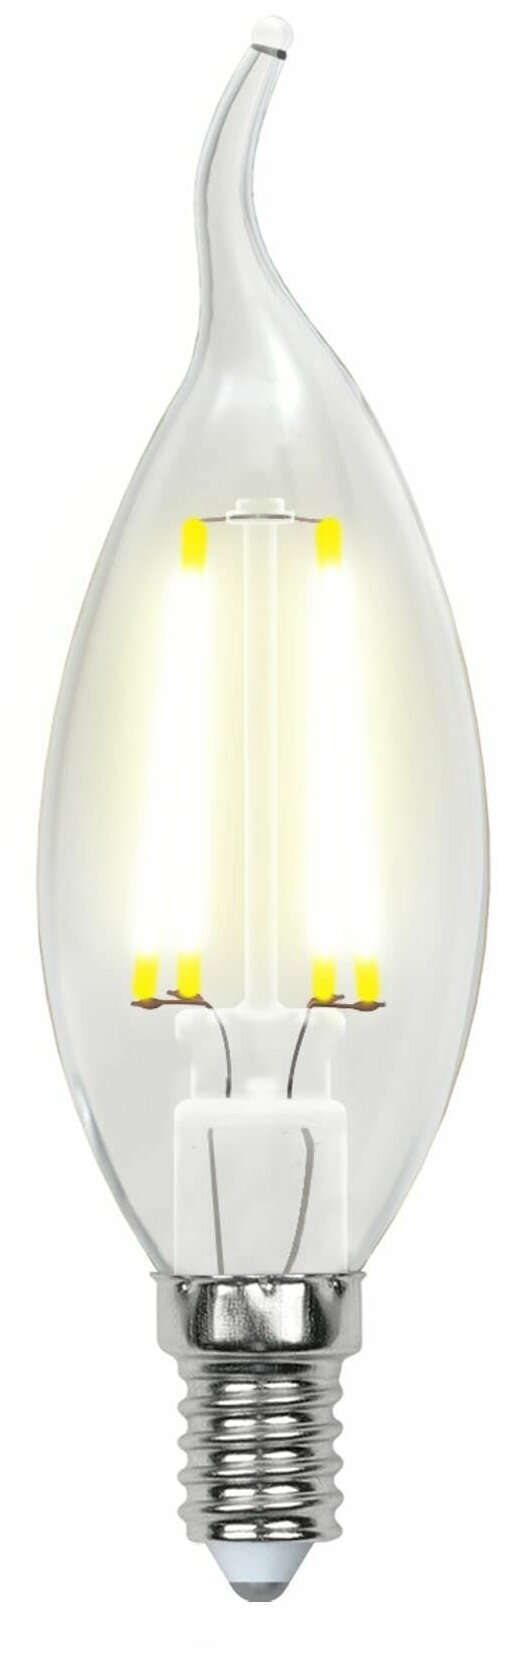 Светодиодная лампа Uniel - фото №1